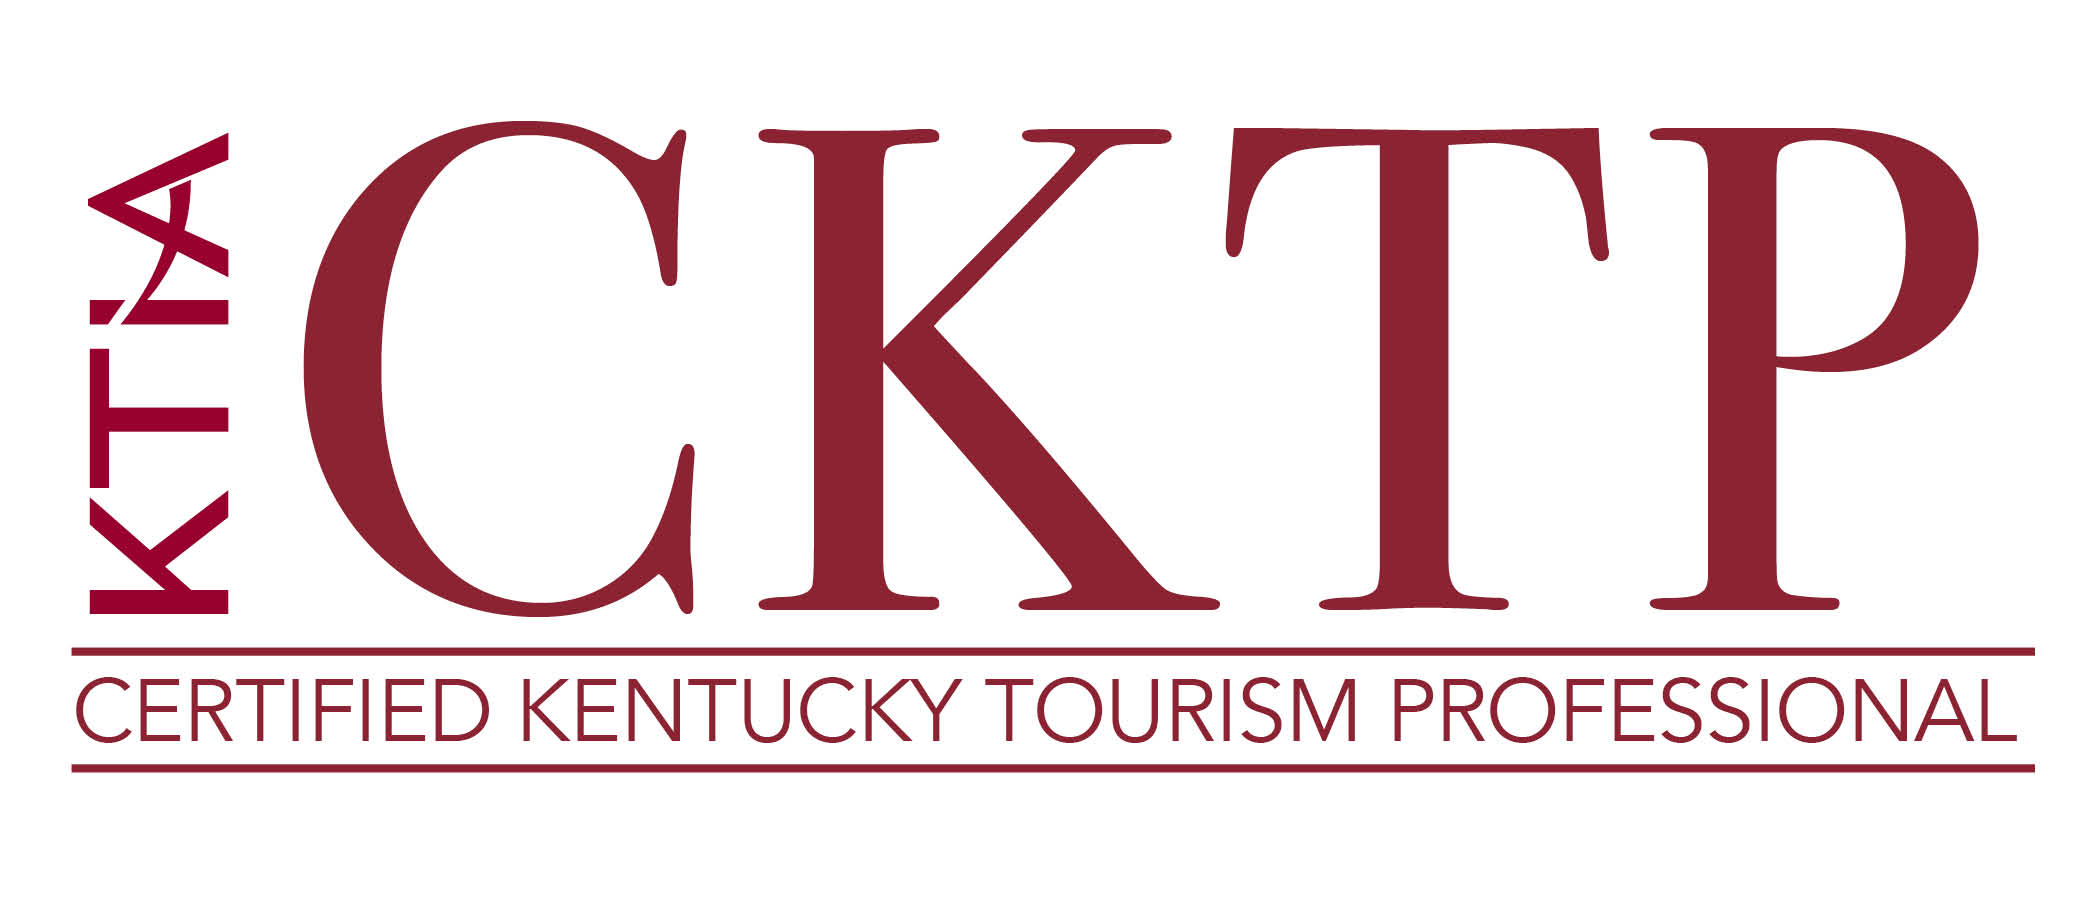 kentucky tourism careers